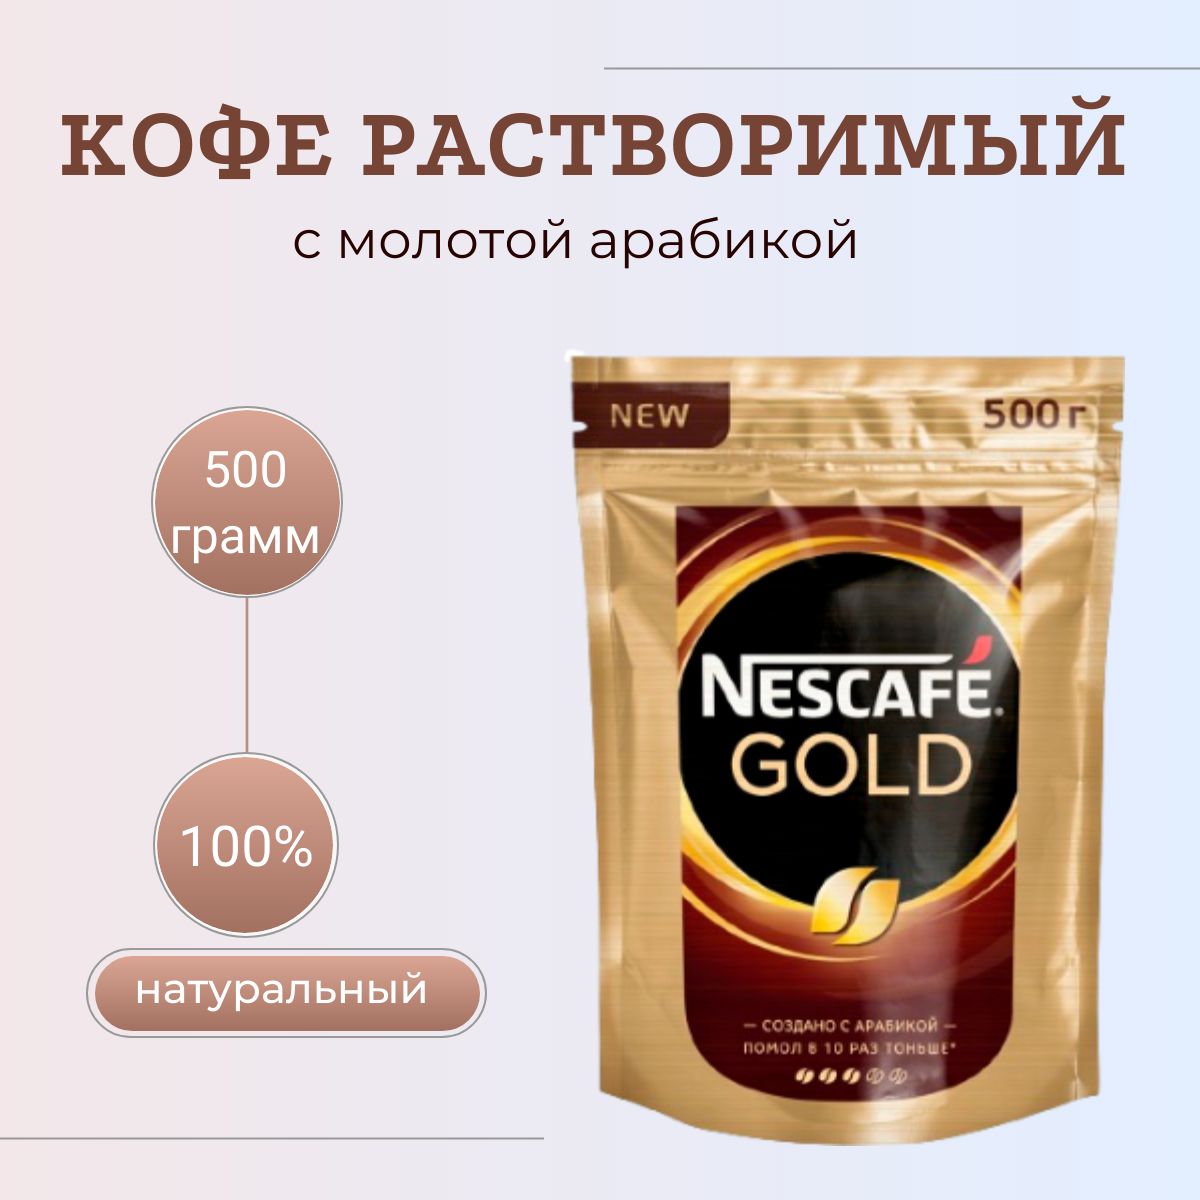 Кофе растворимый nescafe gold 500